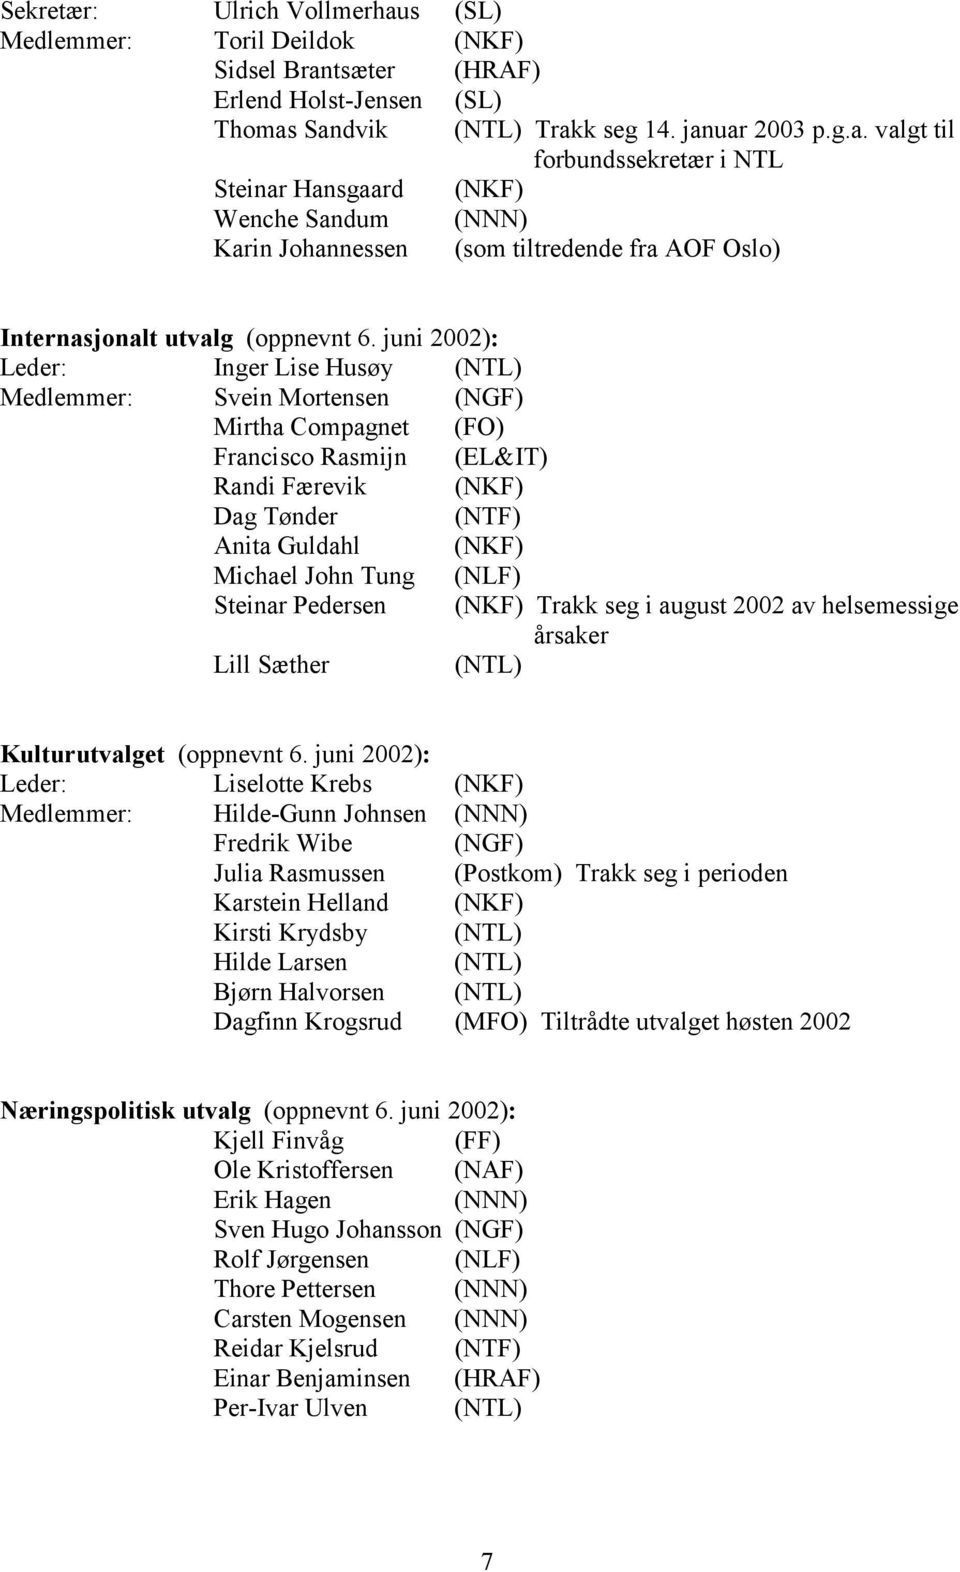 (NLF) Steinar Pedersen (NKF) Trakk seg i august 2002 av helsemessige årsaker Lill Sæther (NTL) Kulturutvalget (oppnevnt 6.